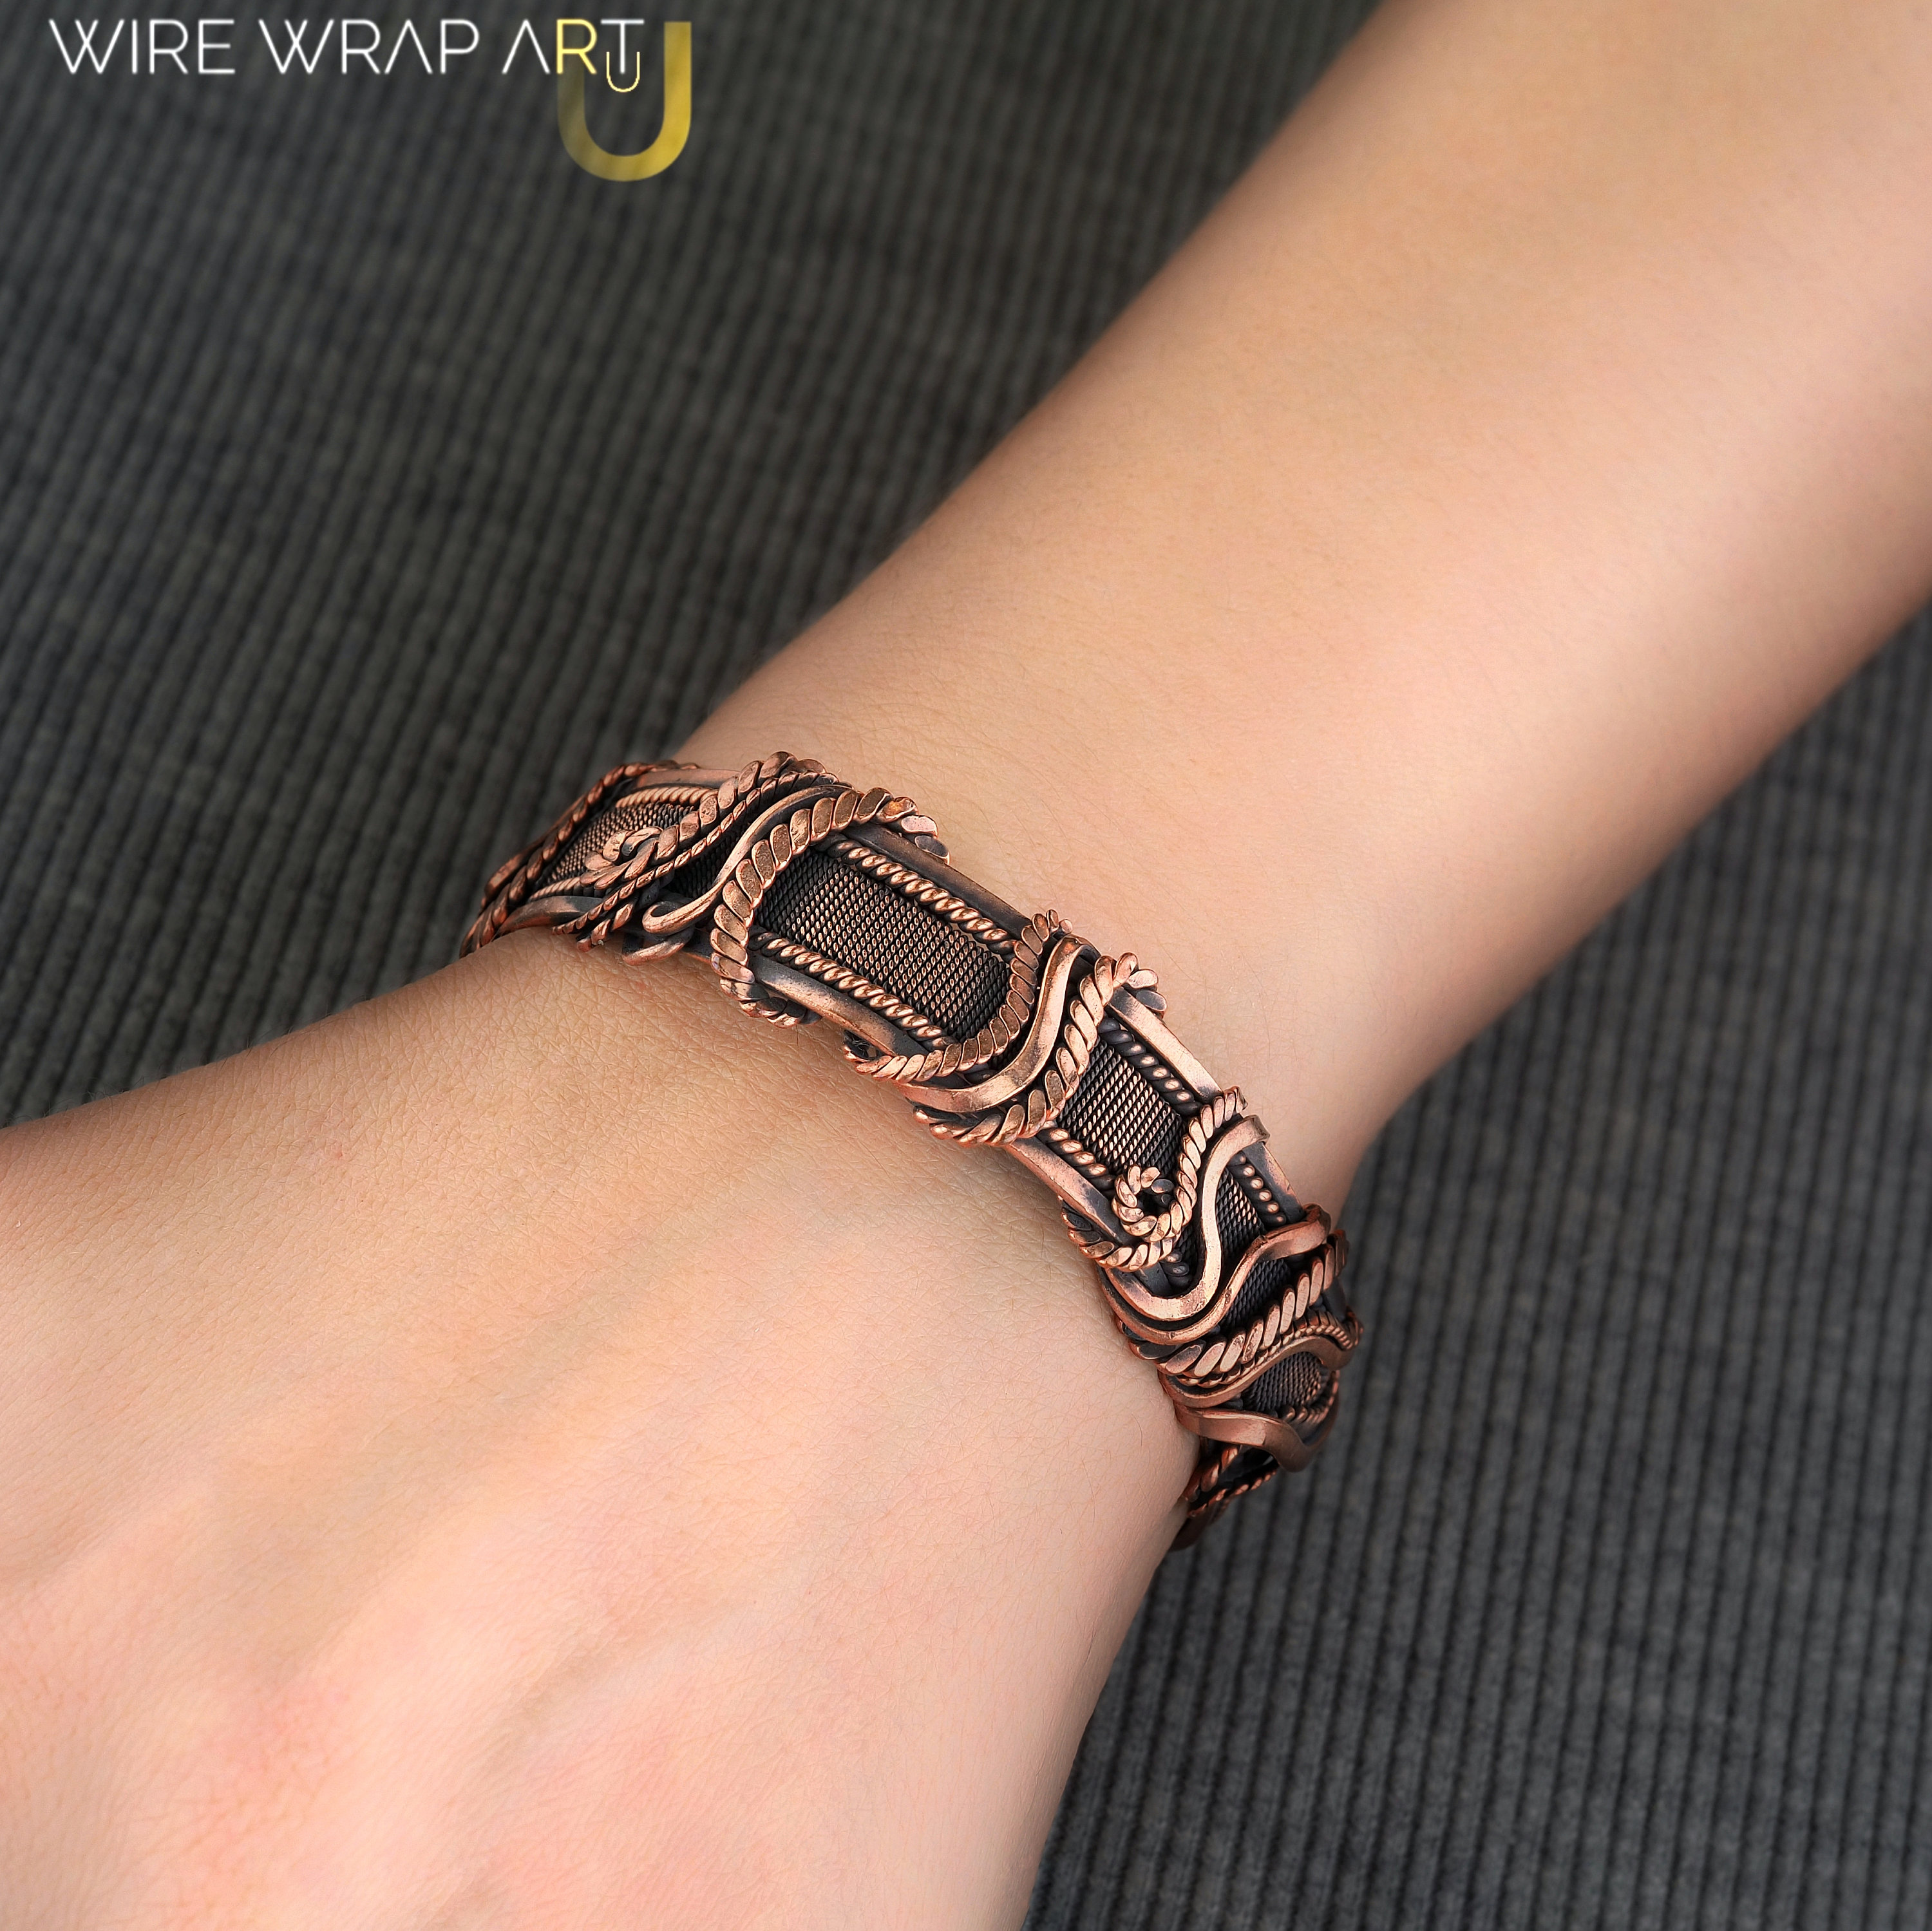 Wire wrapped bracelet / Copper wire bracelet for women / | Etsy